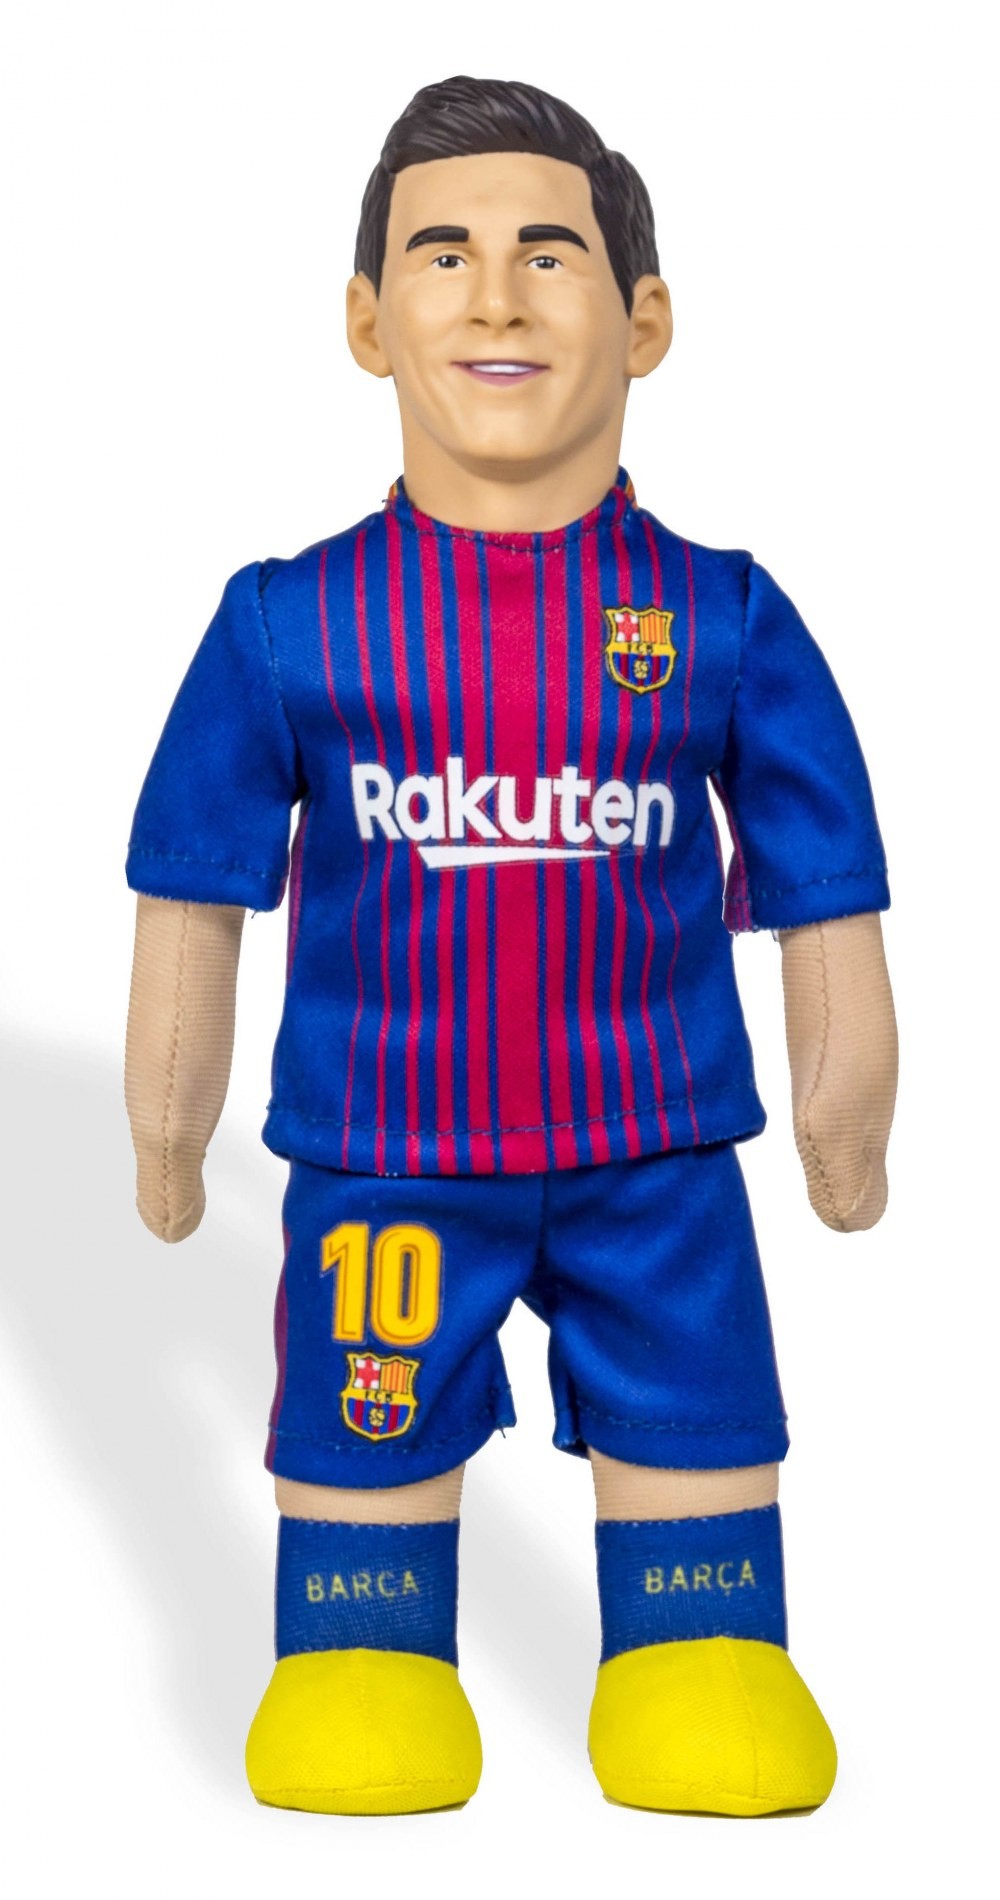 Pupazzo Messi Barcellona Ufficiale Originale 43 cm Mascotte Leo 10 Barcelona 